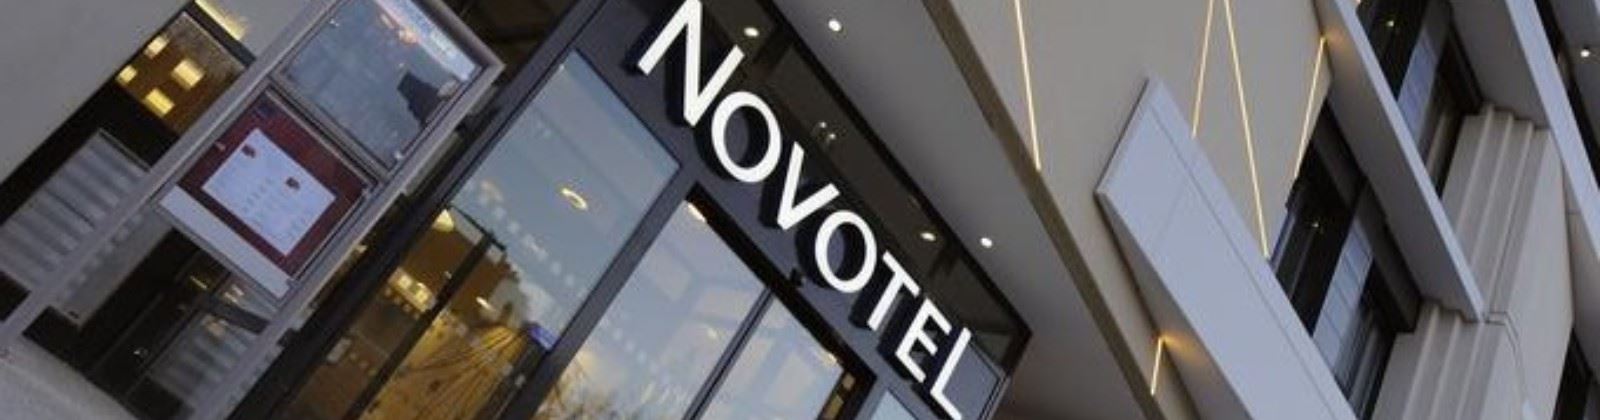 OLEVENE Image - novotel-avignon-centre-olevene-hotel-restaurant-booking-